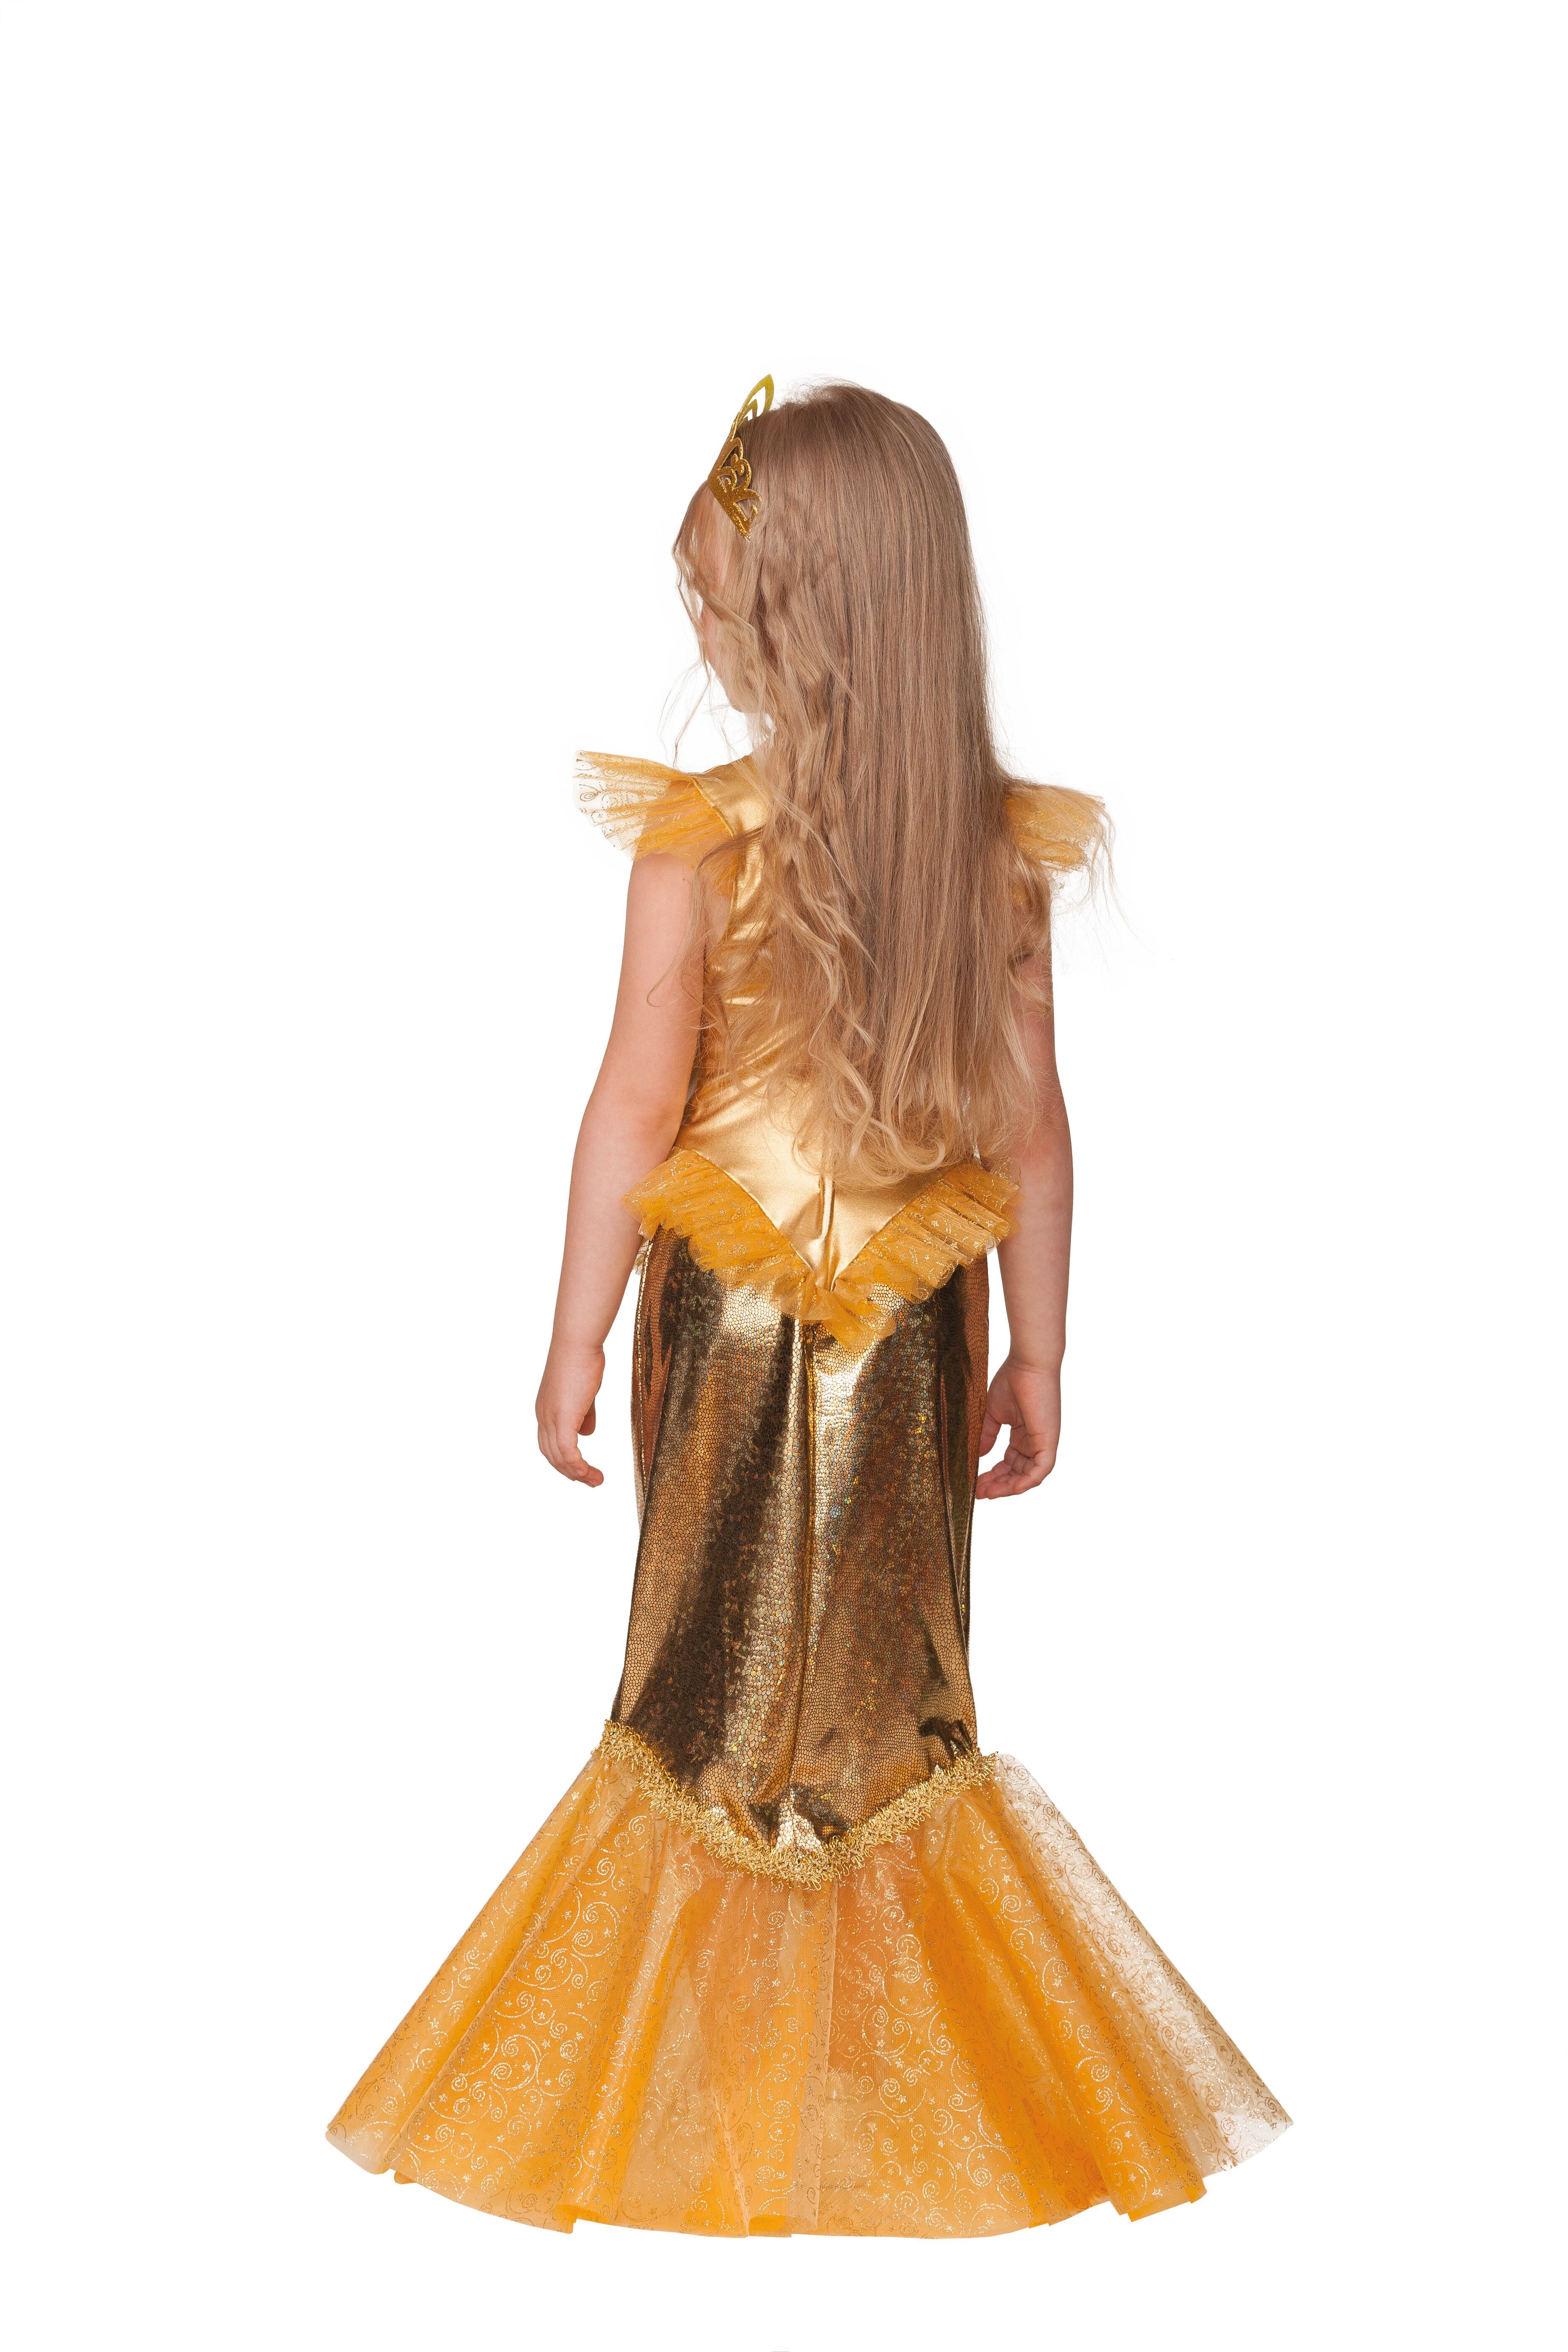 Костюм рыбки своими руками. Детский костюм Золотая рыбка. Валберис костюм Золотая рыбка. Костюм золотой рыбки для девочки. Платье золотой рыбки для девочки.